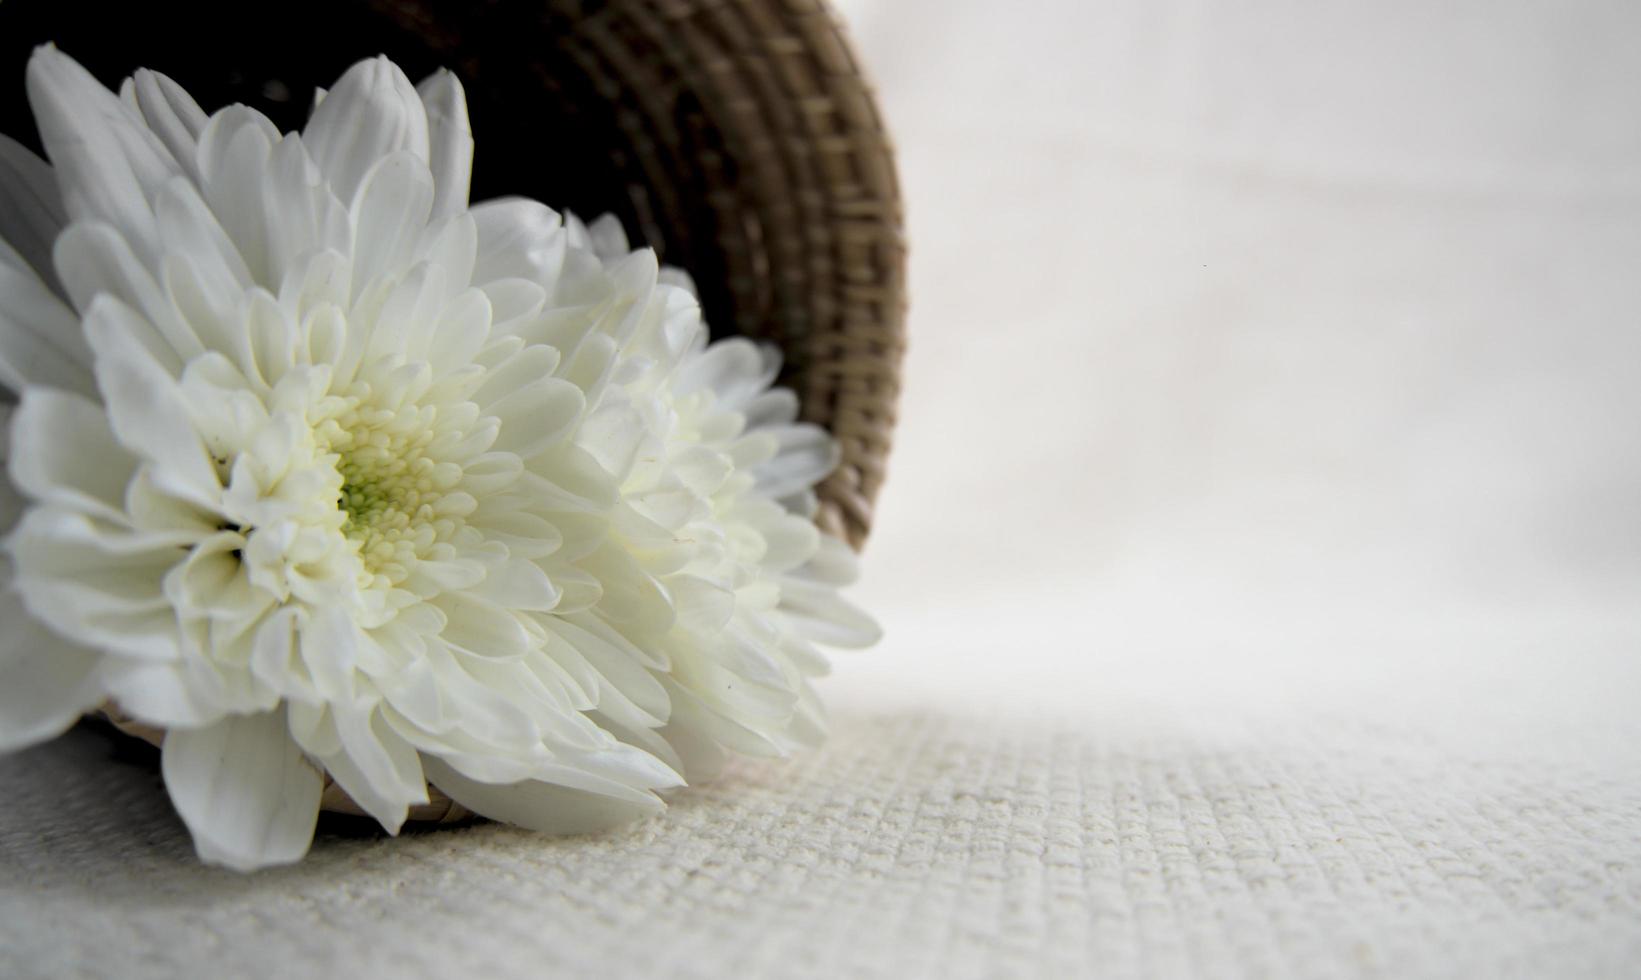 Flor de crisantemo blanco en canasta de madera sobre hoja blanca foto